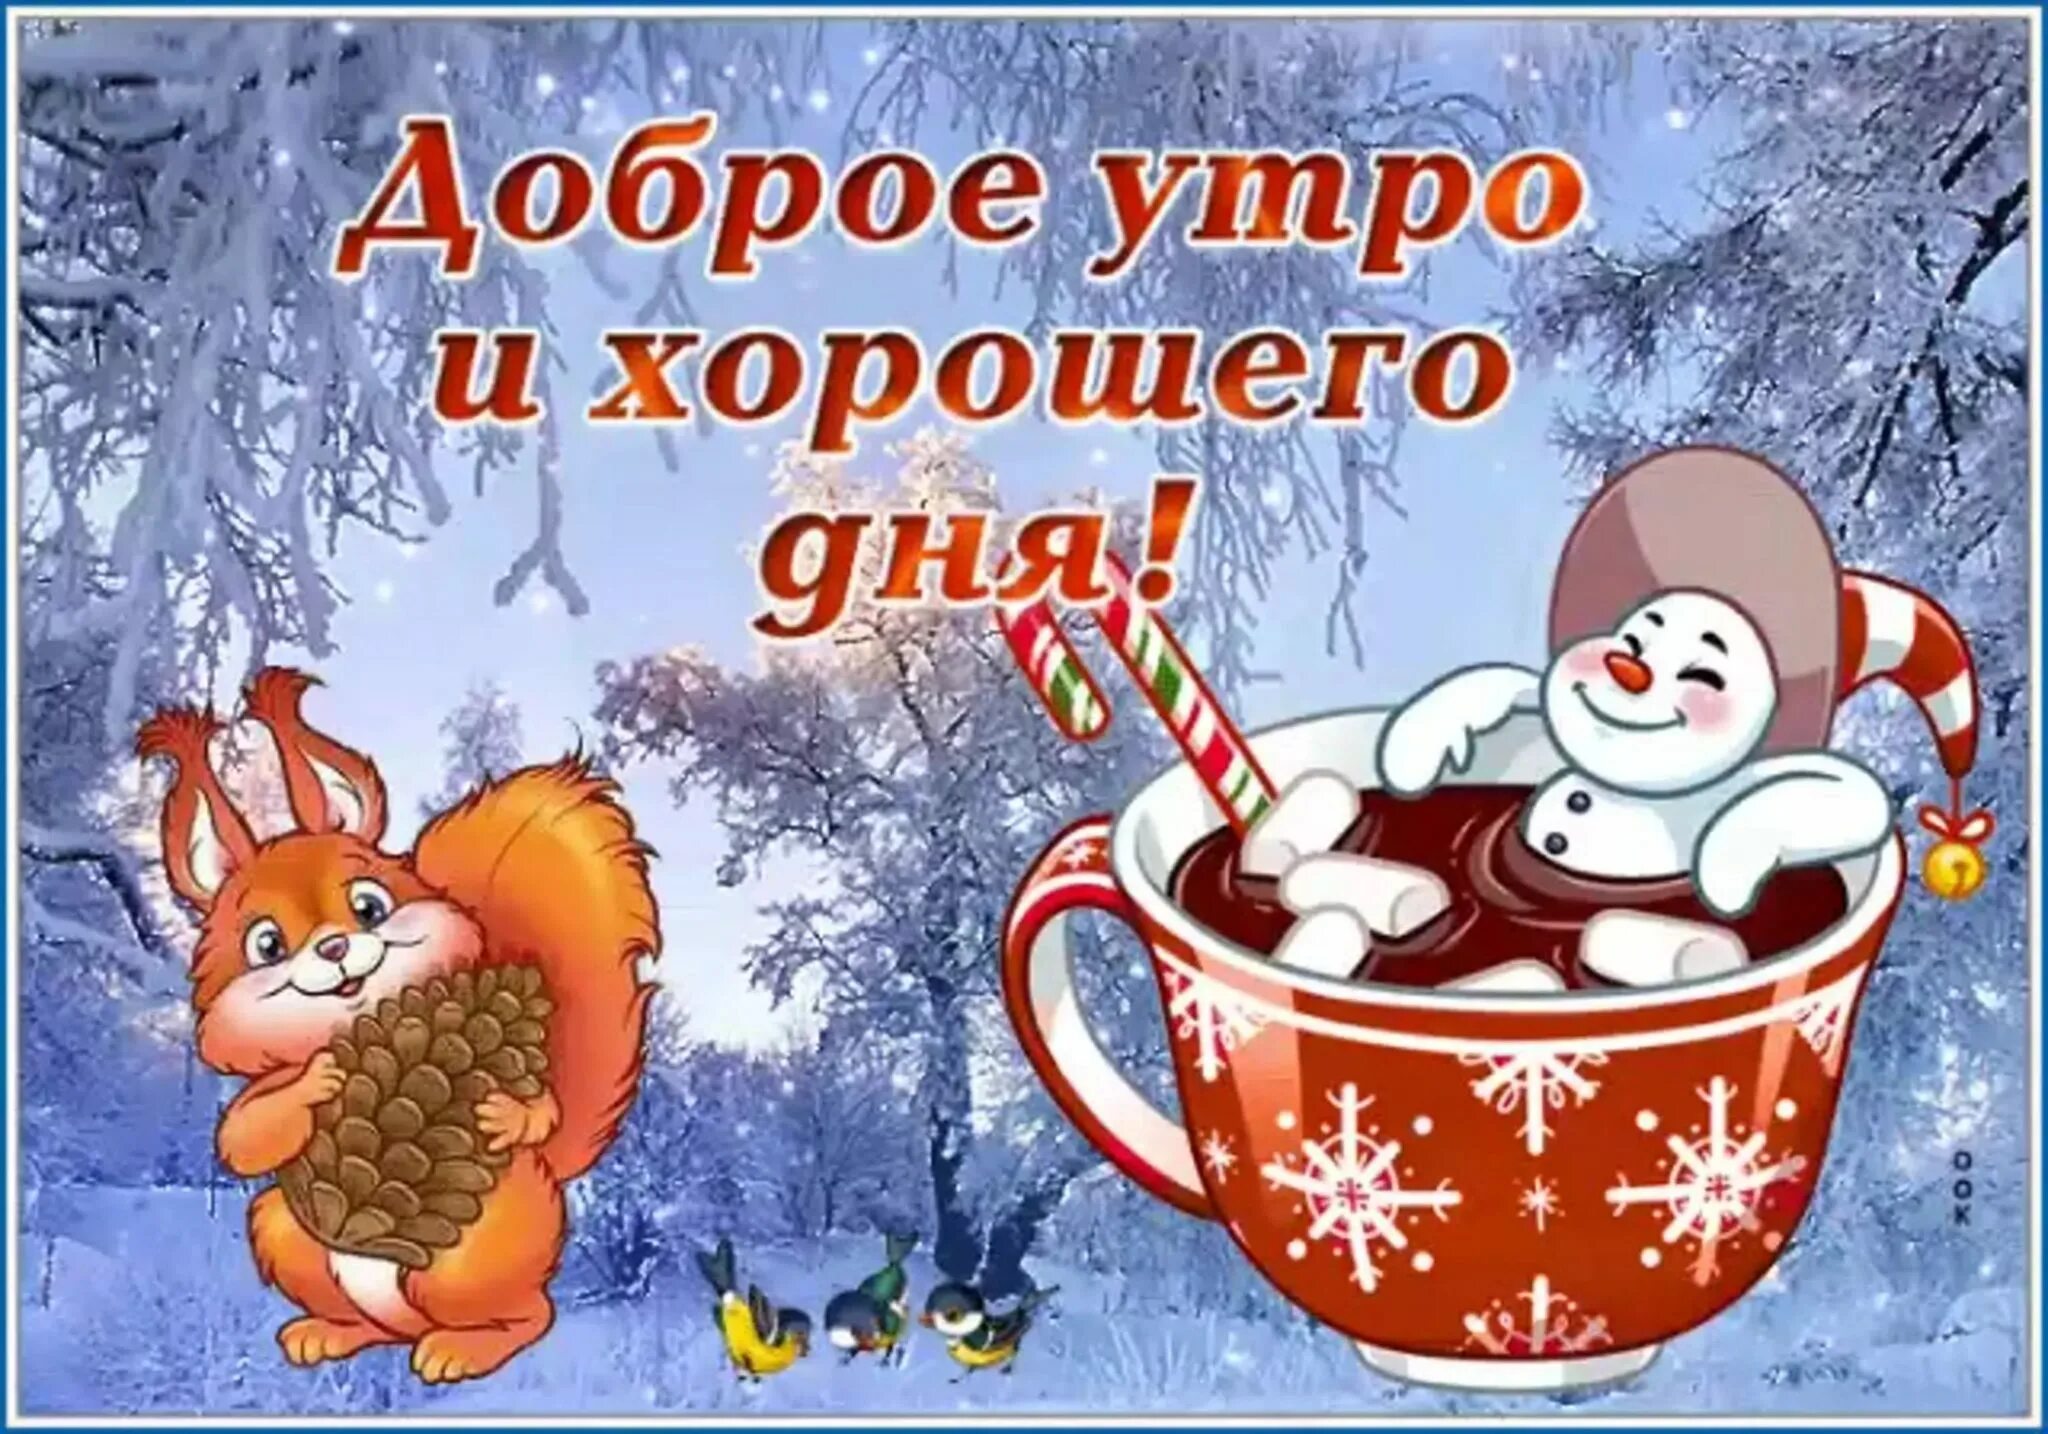 С добрым зимним утром. Пожелания с добрым утром зимние. Доброго зимнего утра и хорошего дня. С добрым зимним утром и хорошим днём с пожеланиями. Доброго утра зимы хорошего настроения